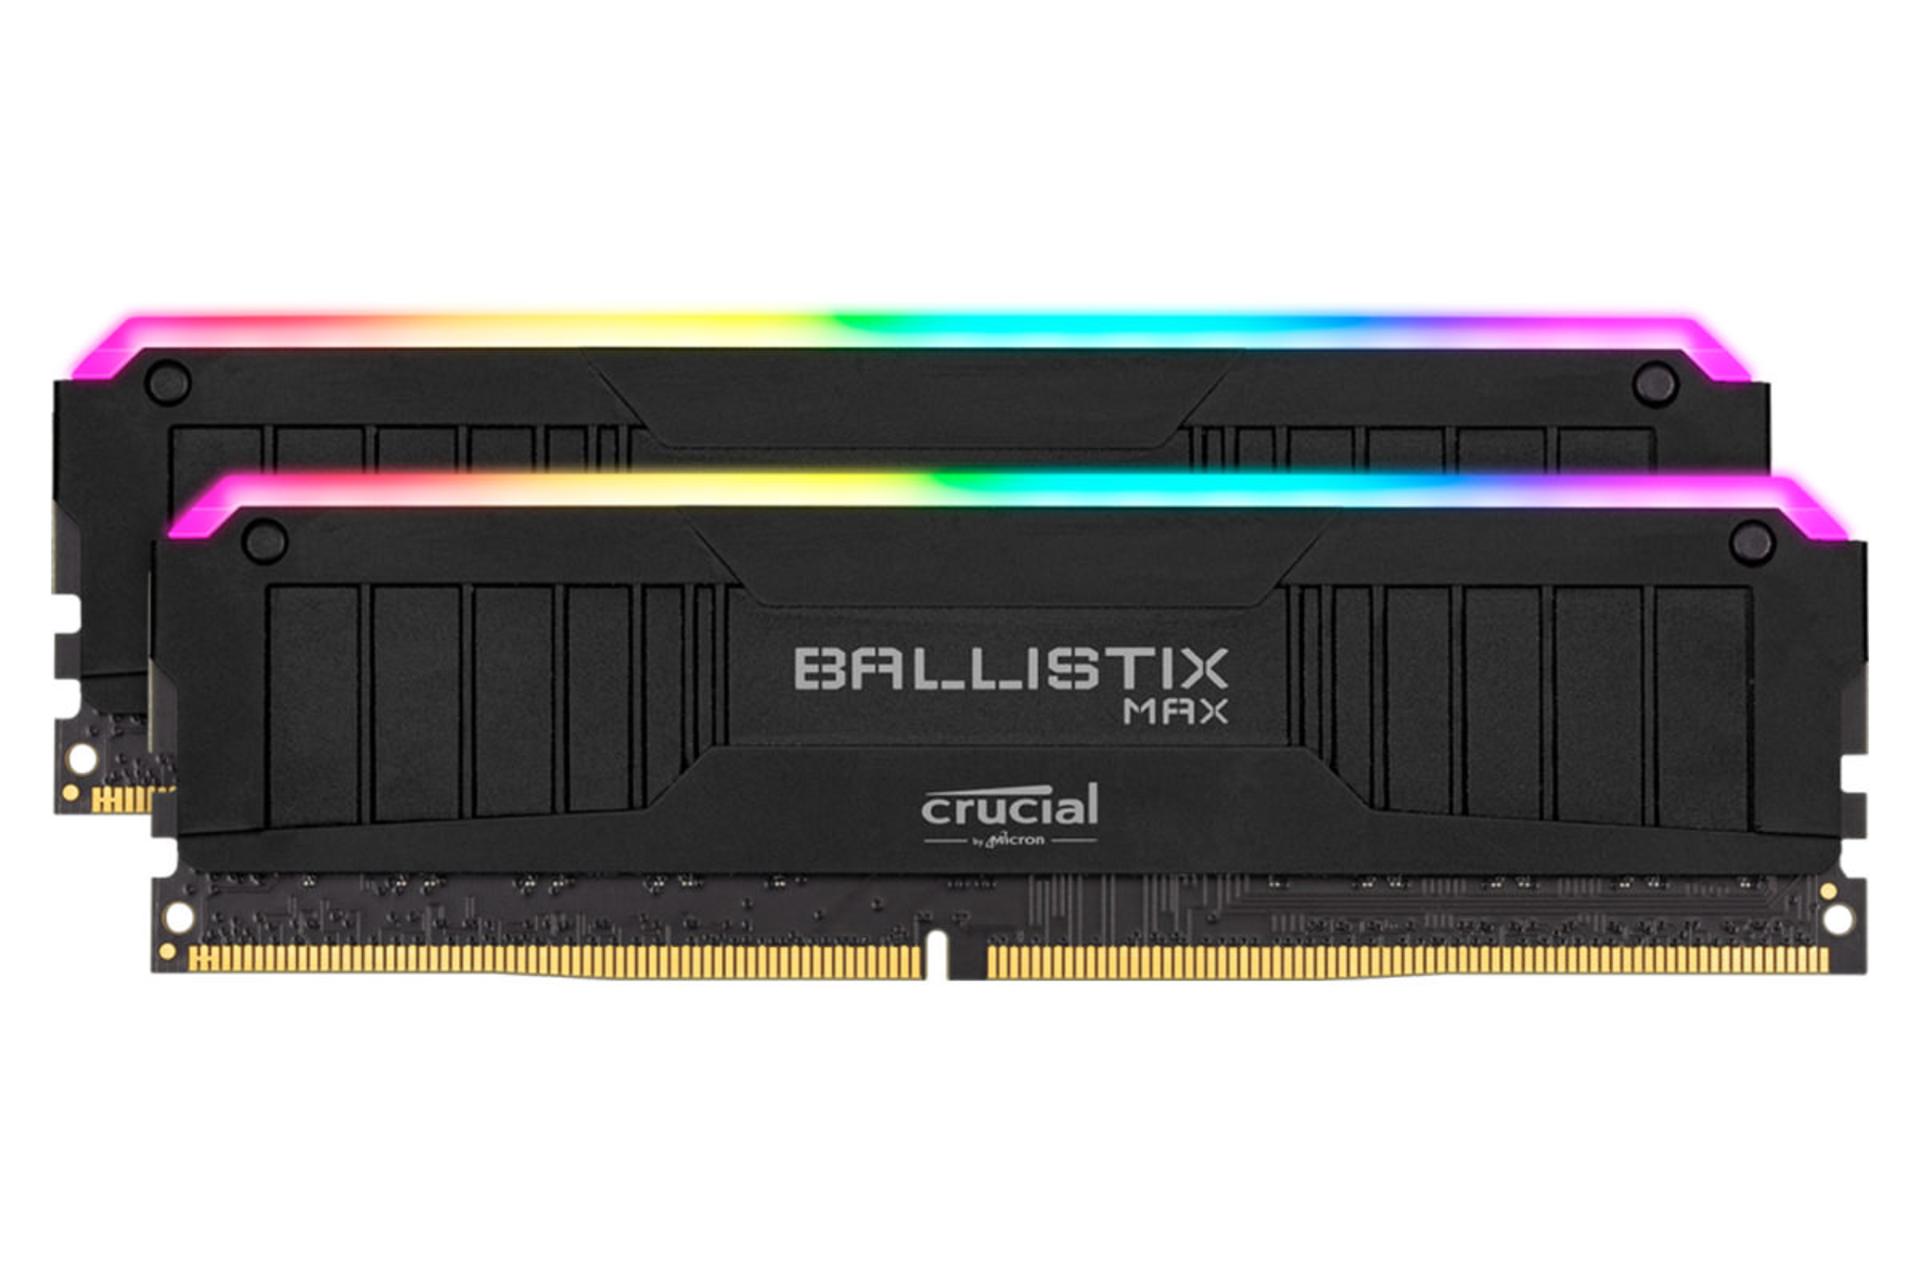 رم کروشیال Ballistix MAX RGB ظرفیت 32 گیگابایت (2x16) از نوع DDR4-4000